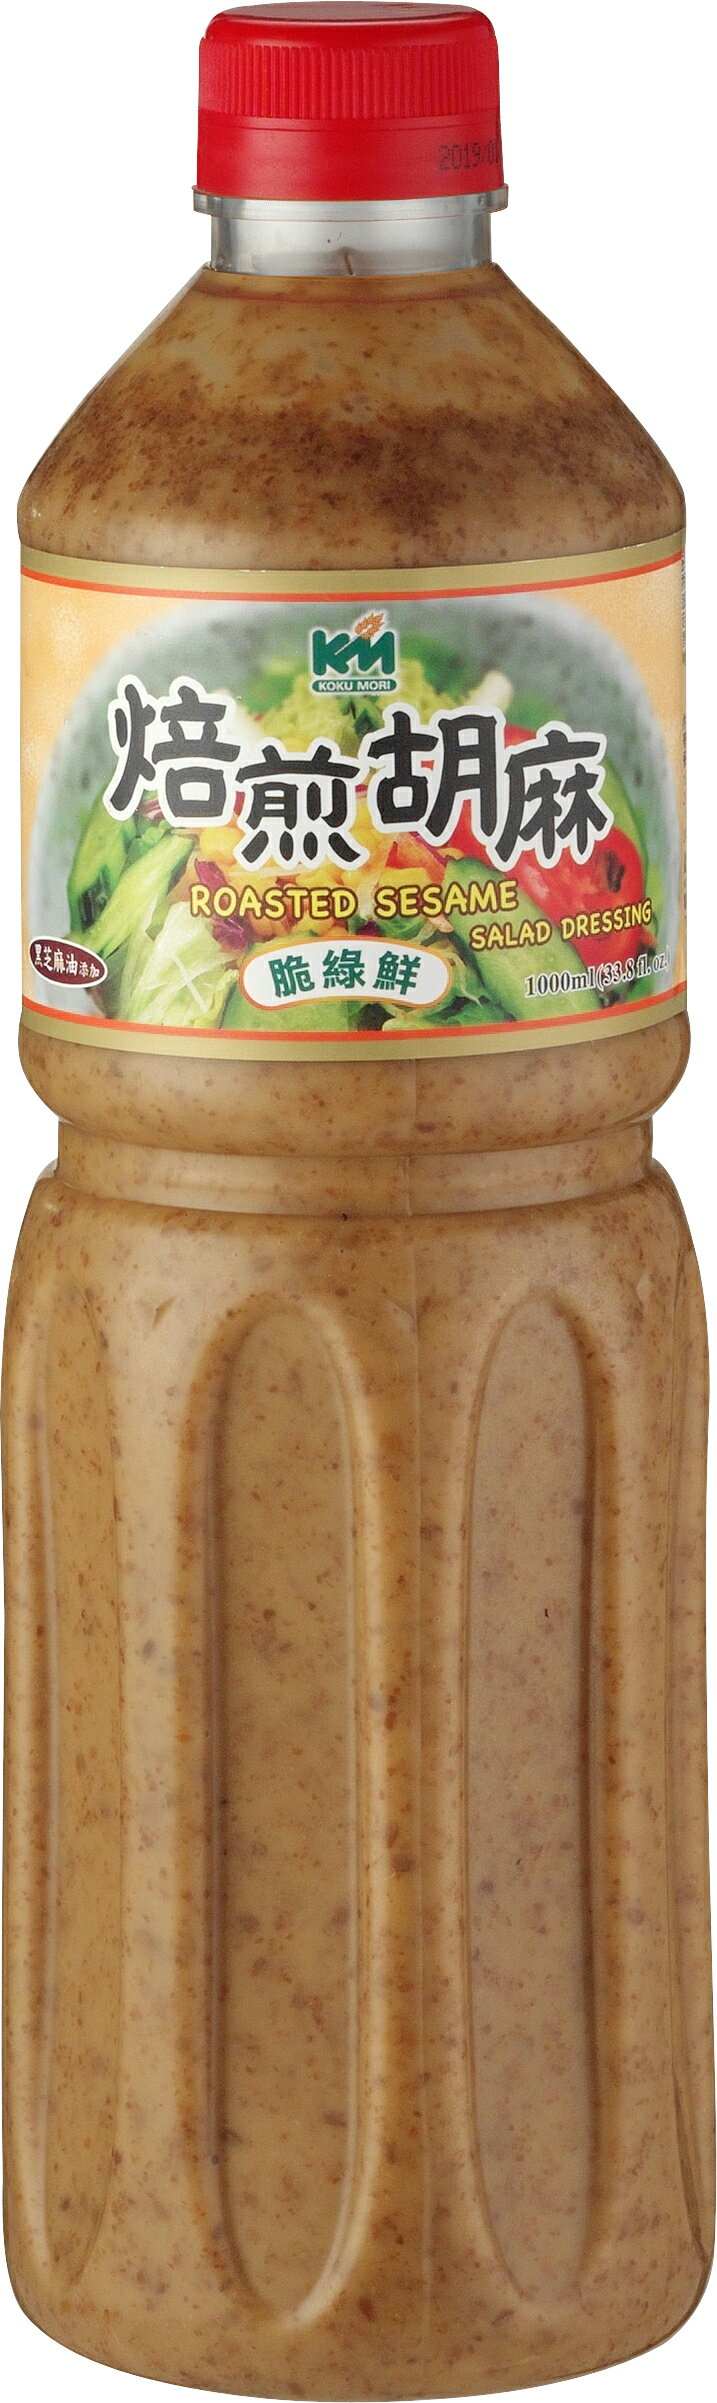 【穀盛】脆綠鮮 焙煎胡麻沙拉1000ml